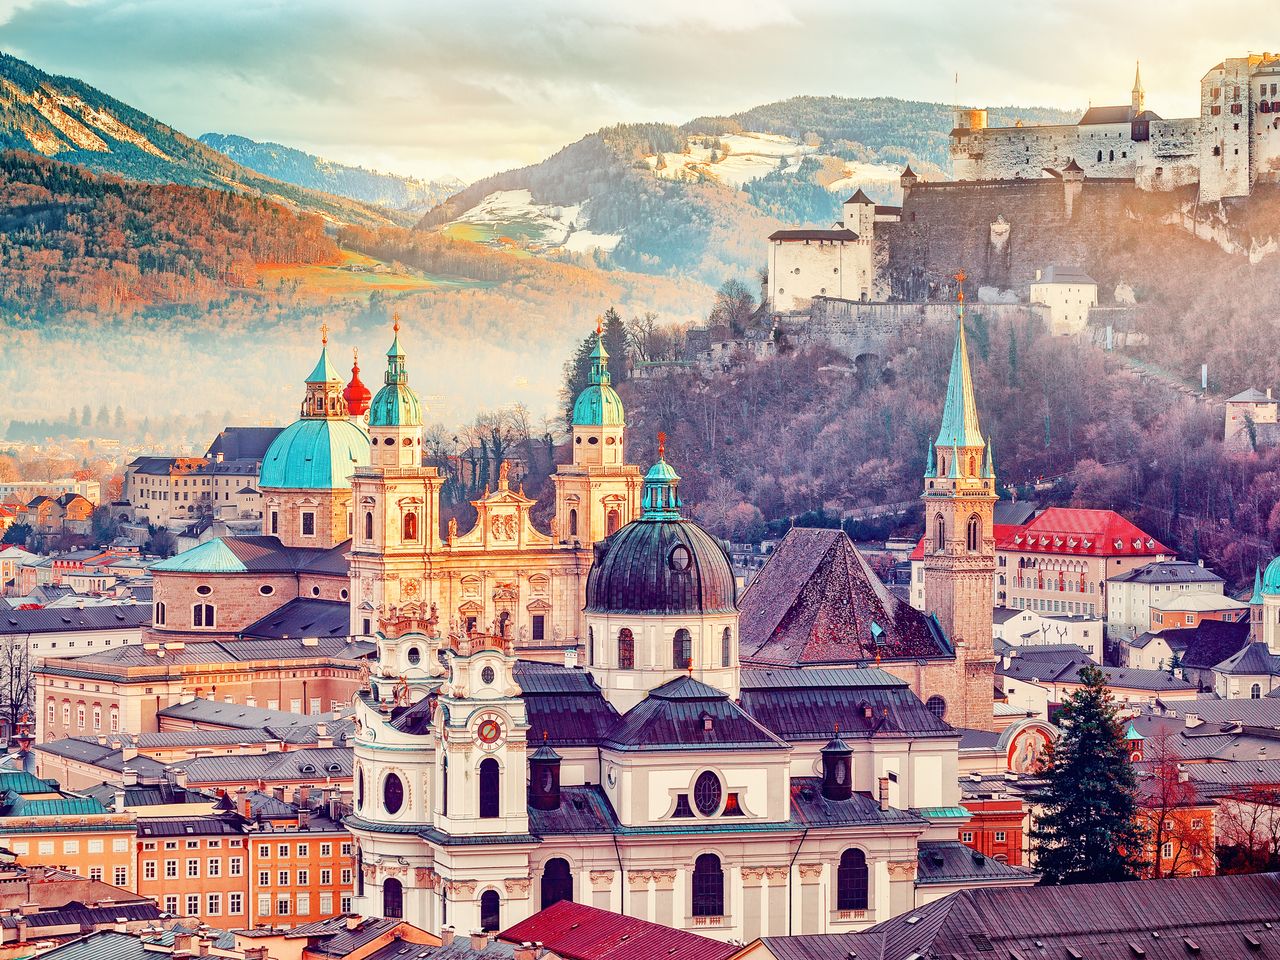 Das schöne Salzburg erleben - 4 Tage mit Frühstück